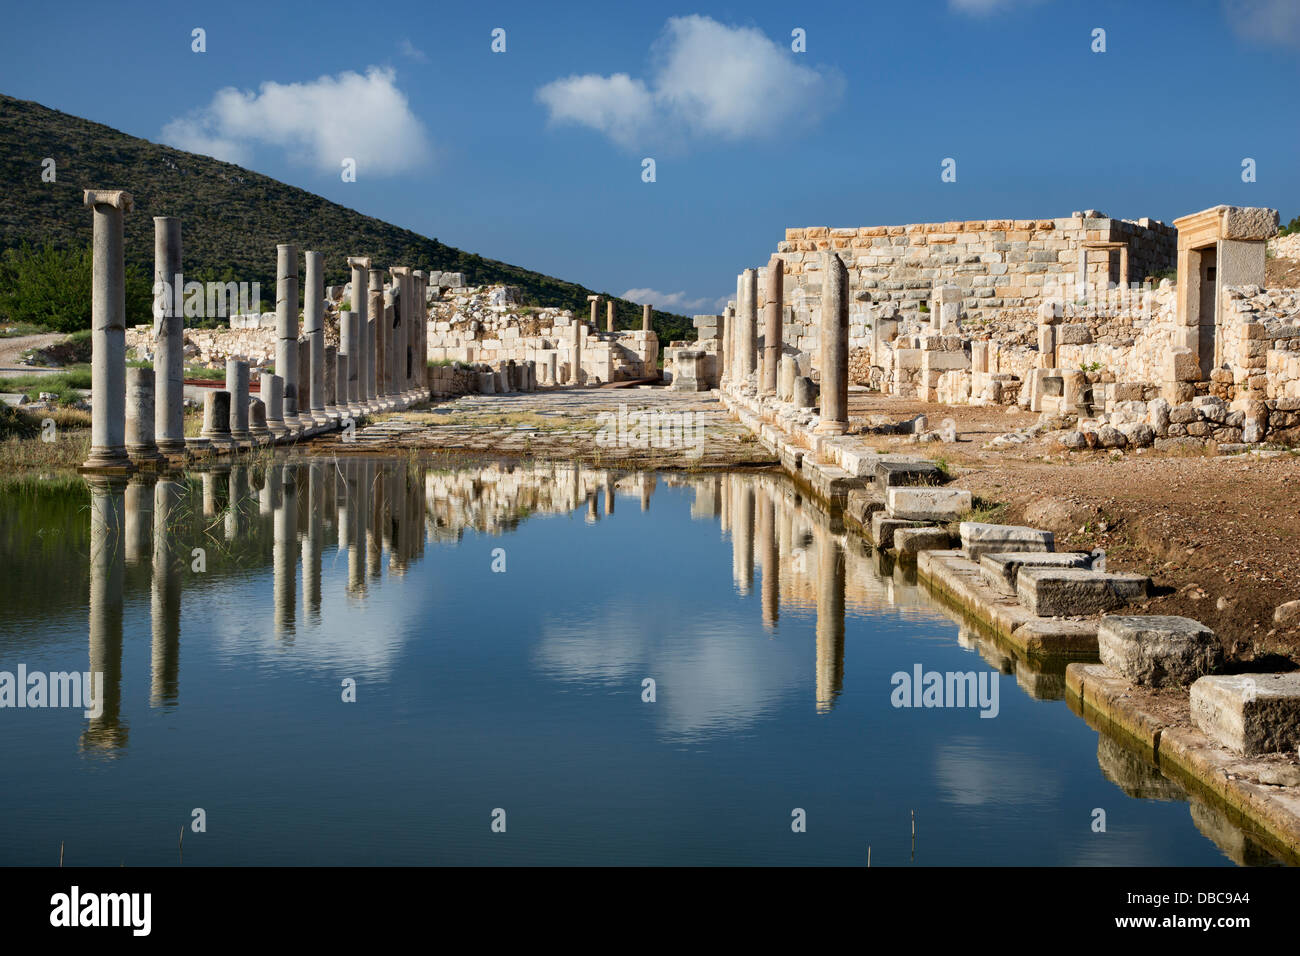 Ancient Lycian city of Patara in Turkey Stock Photo